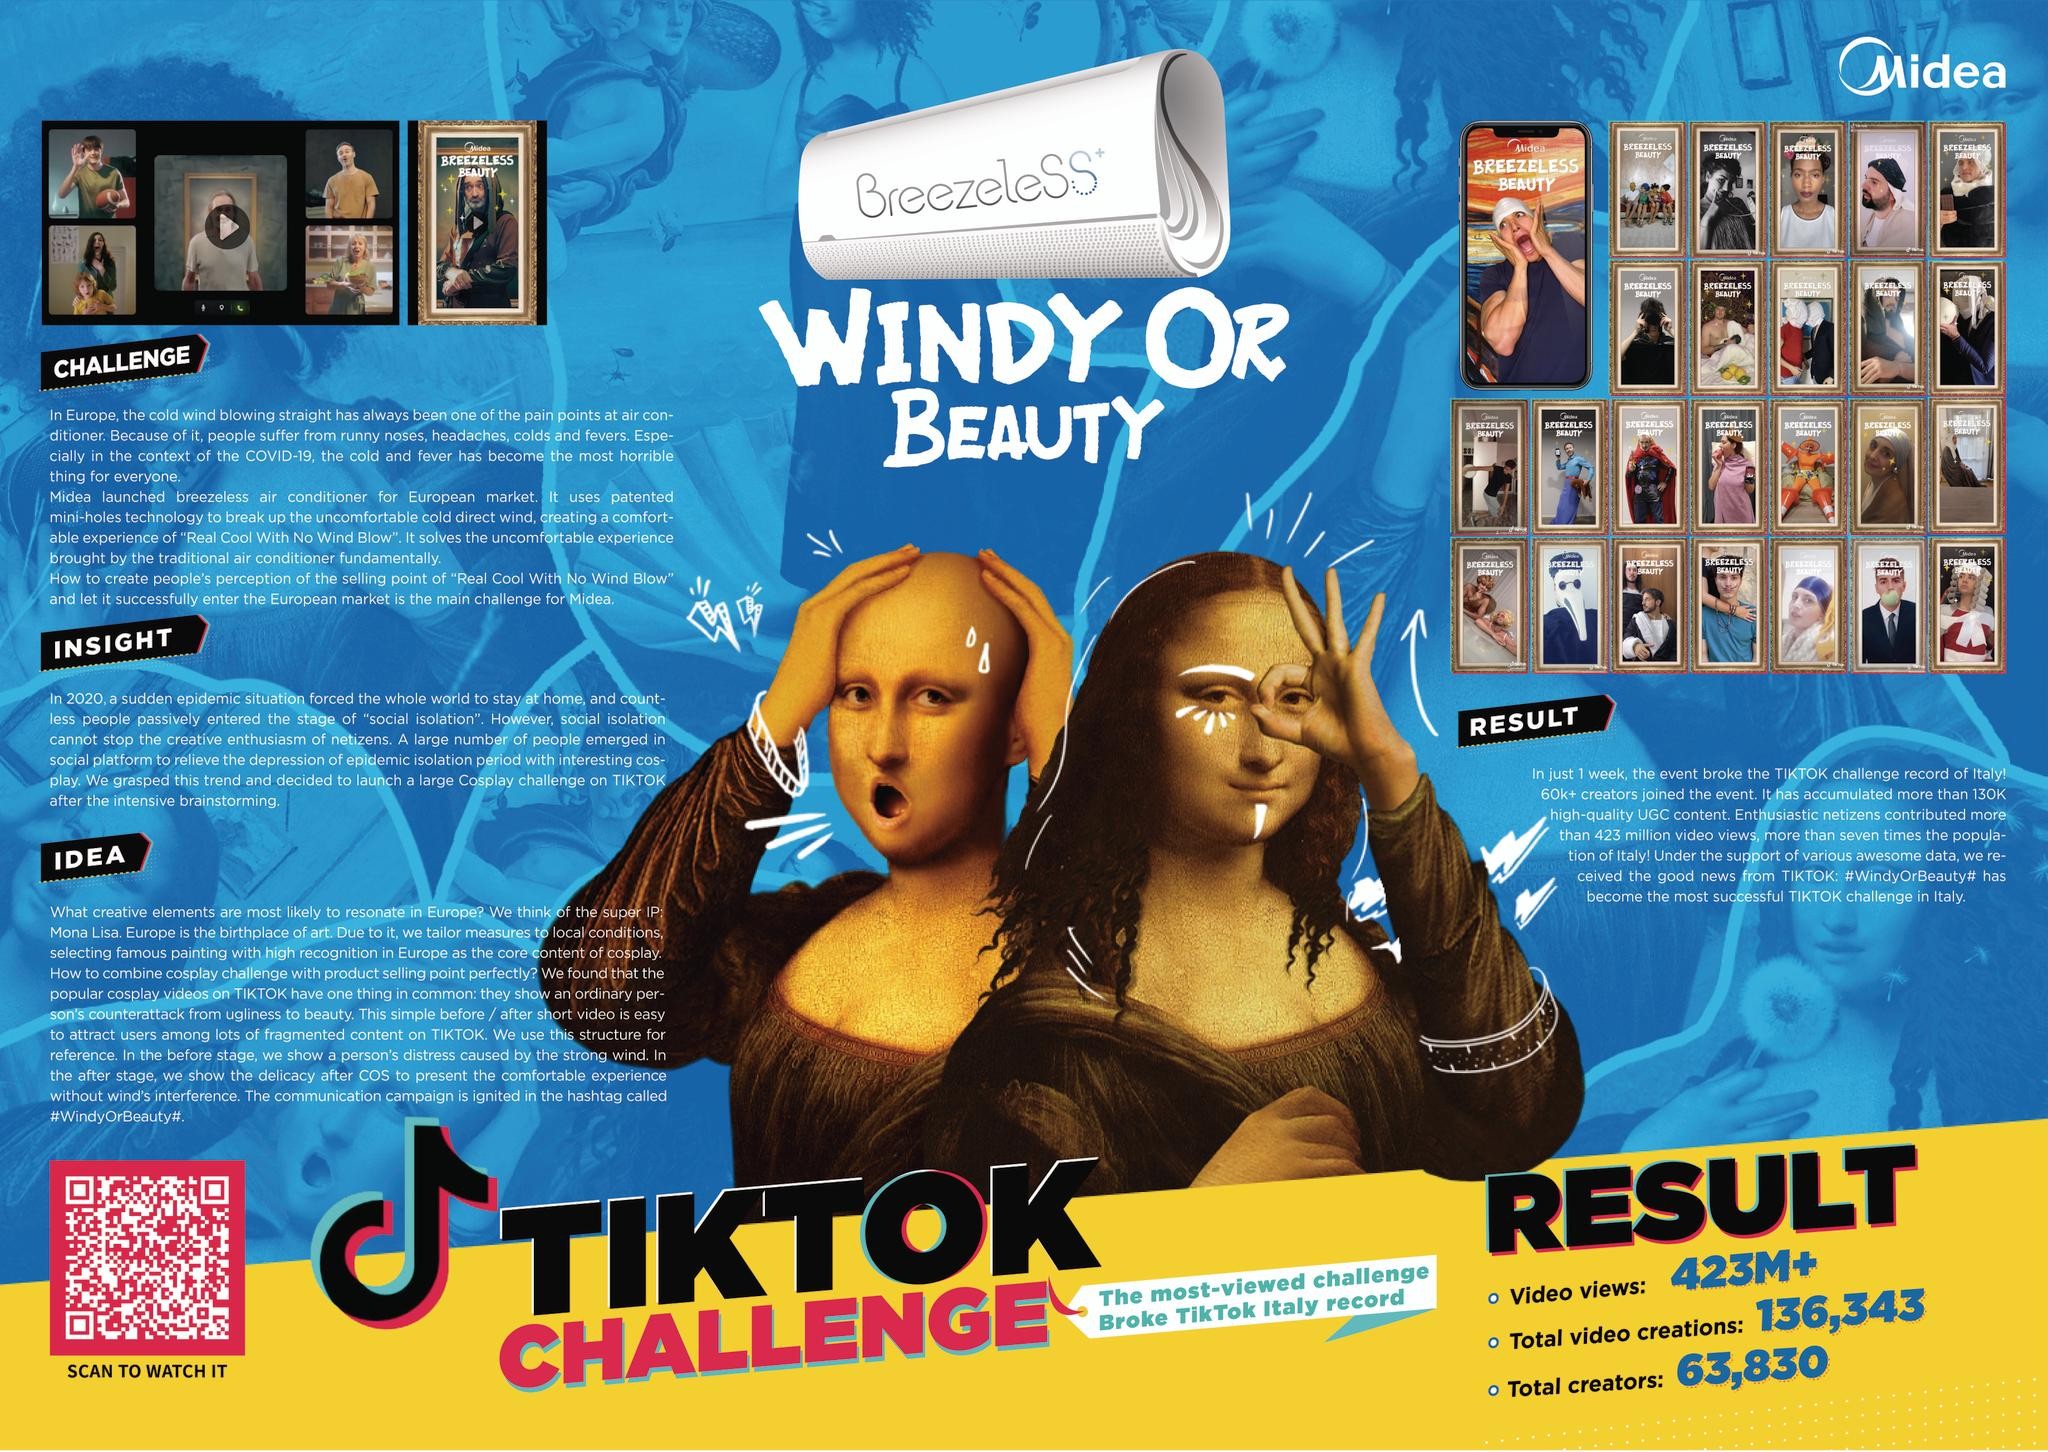 Midea #WindyOrBeauty# Italy TIKTOK Challenge